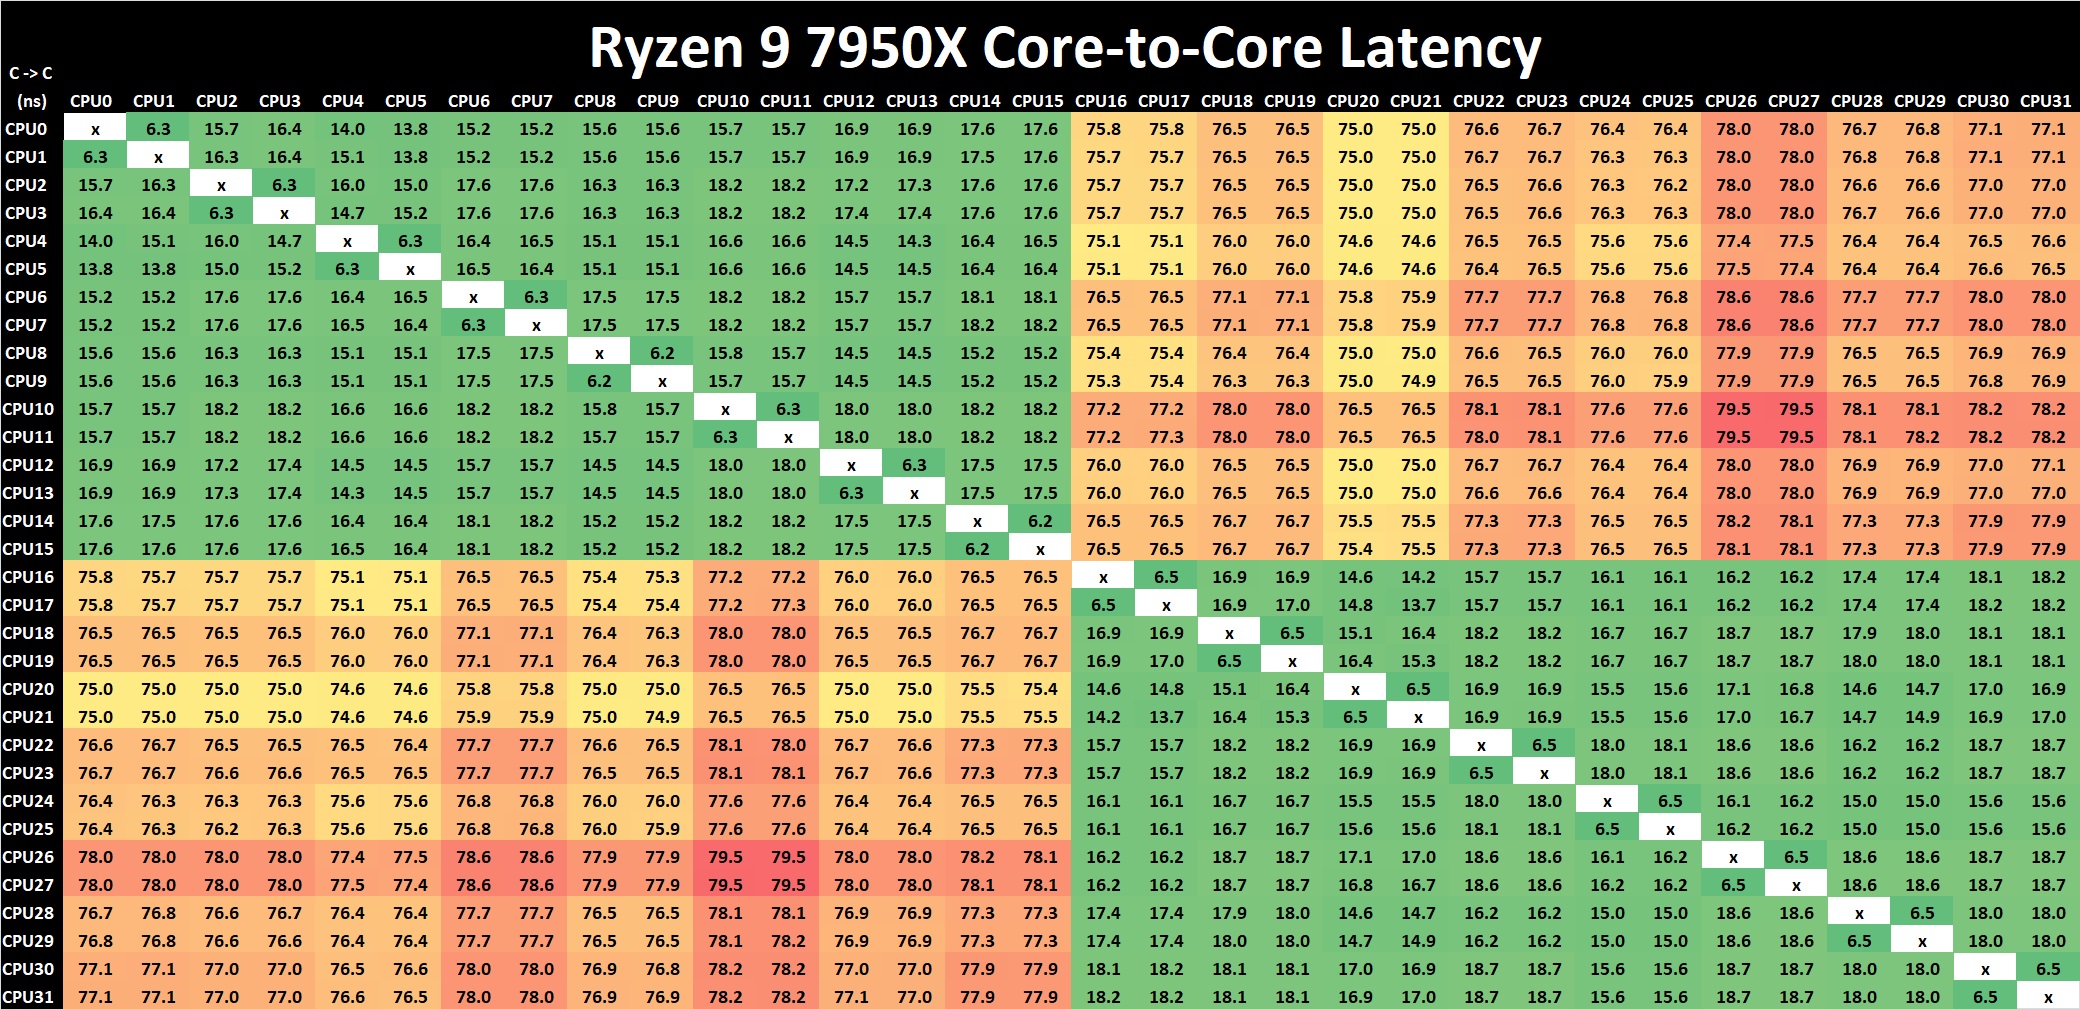 AMD%20Ryzen%209%207950X%20Core%20to%20Core%20Latency%20Final.jpg